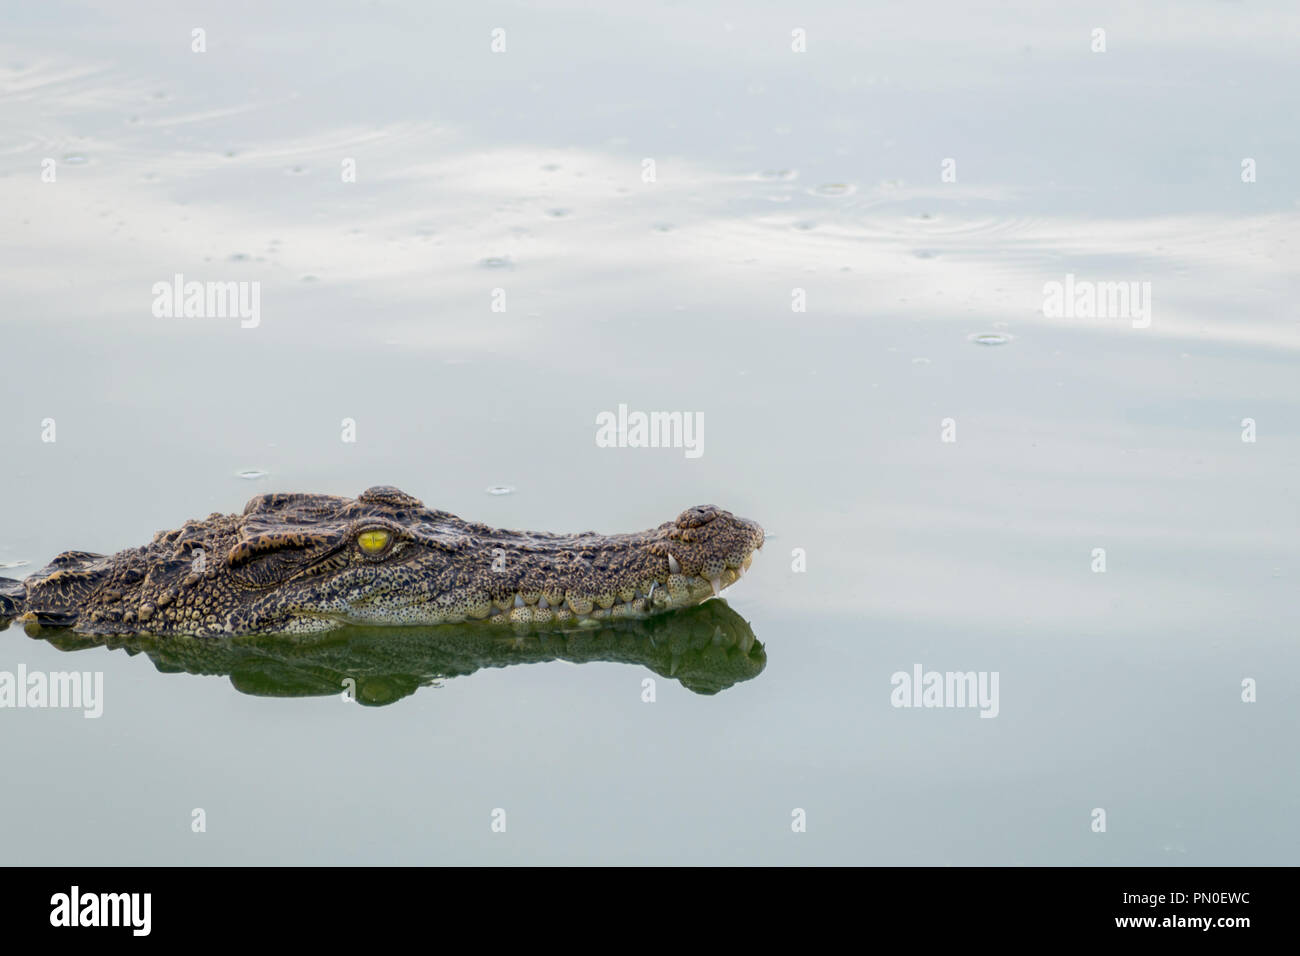 Tierwelt Krokodil schwimmend auf dem Wasser und warten auf die Jagd ein Tier im Fluss. Tier- und Pflanzenwelt und Natur Konzept. Stockfoto